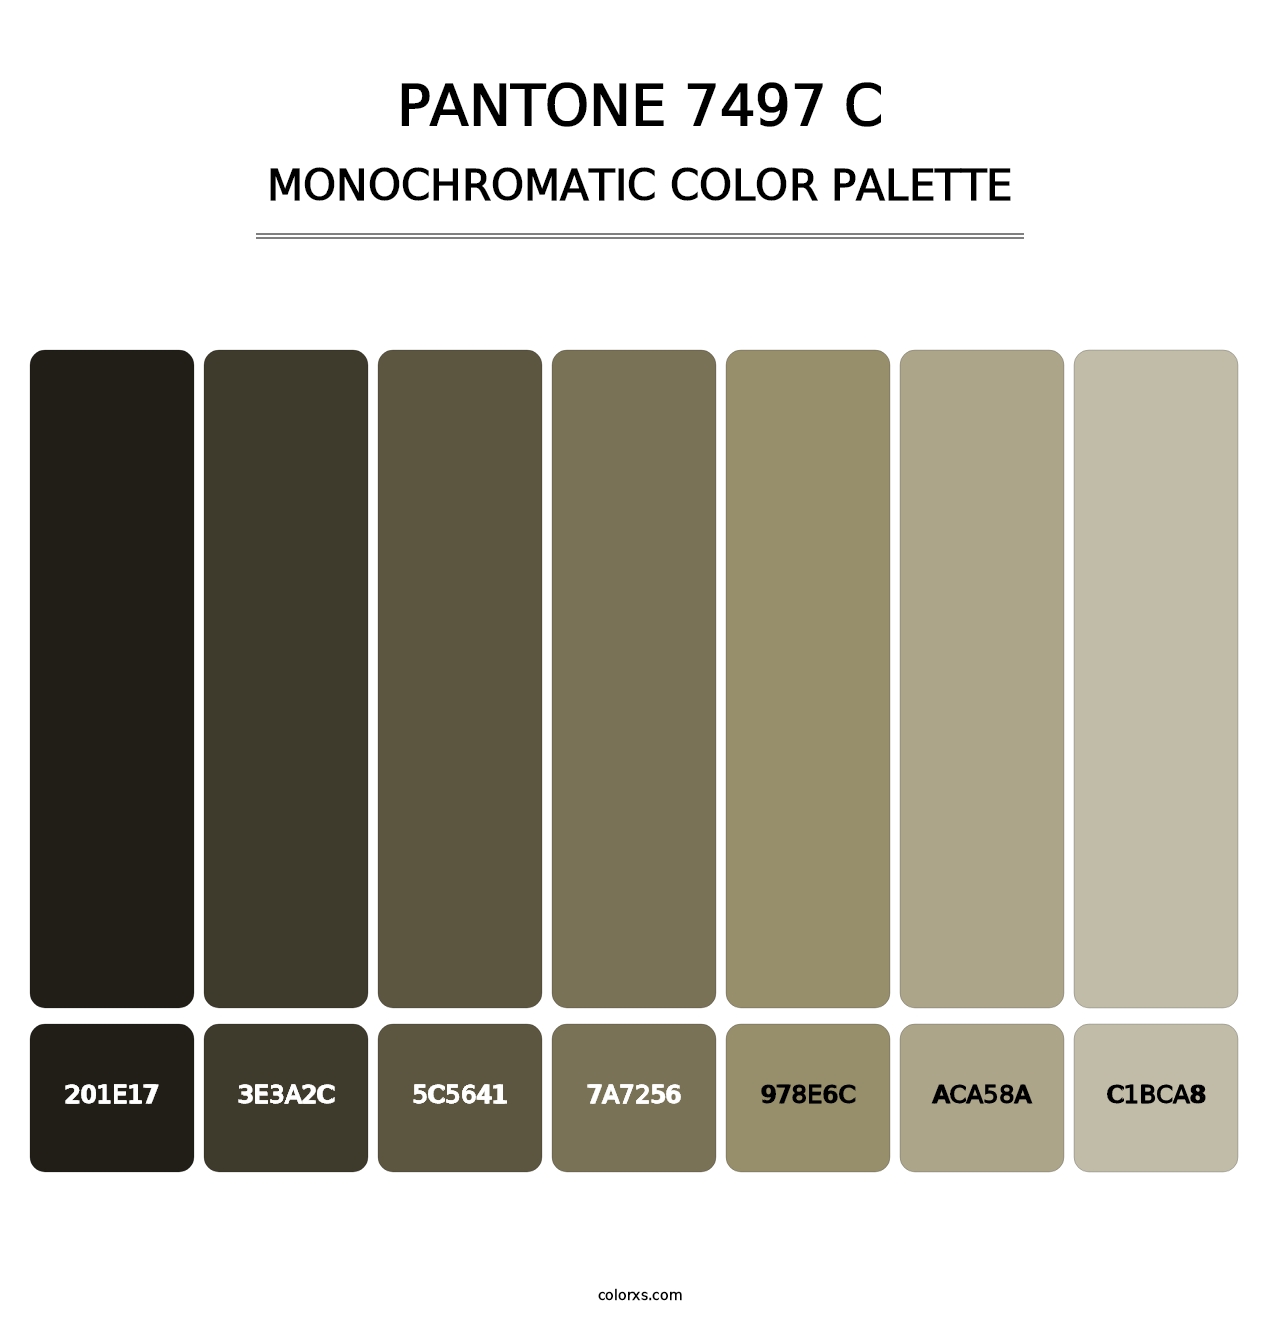 PANTONE 7497 C - Monochromatic Color Palette